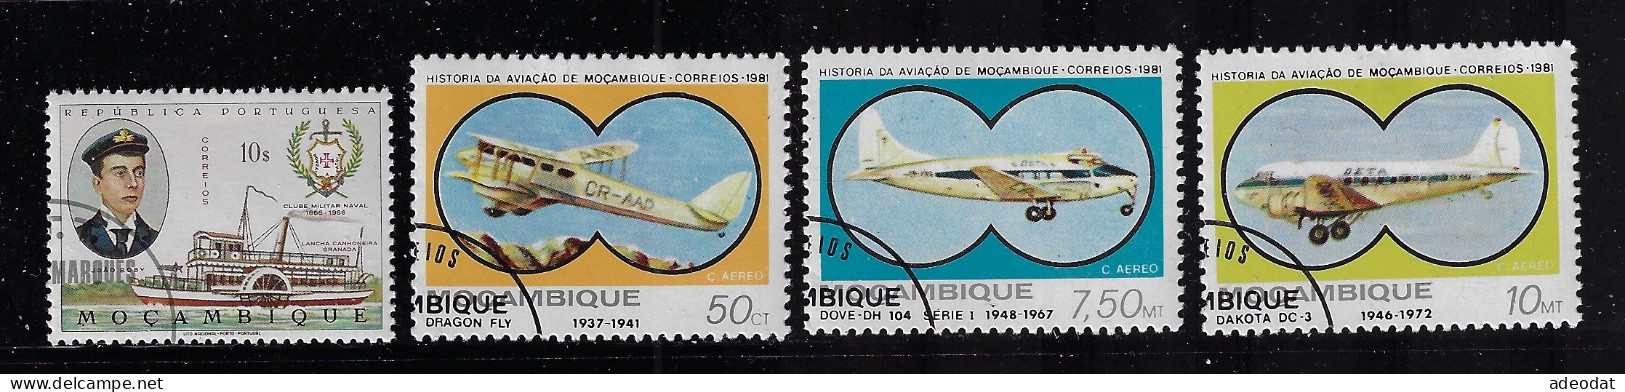 MOZAMBIQUE  1967,1980   SCOTT#479,C39,C42,C43   USED  CV  $1.00 - Mozambique